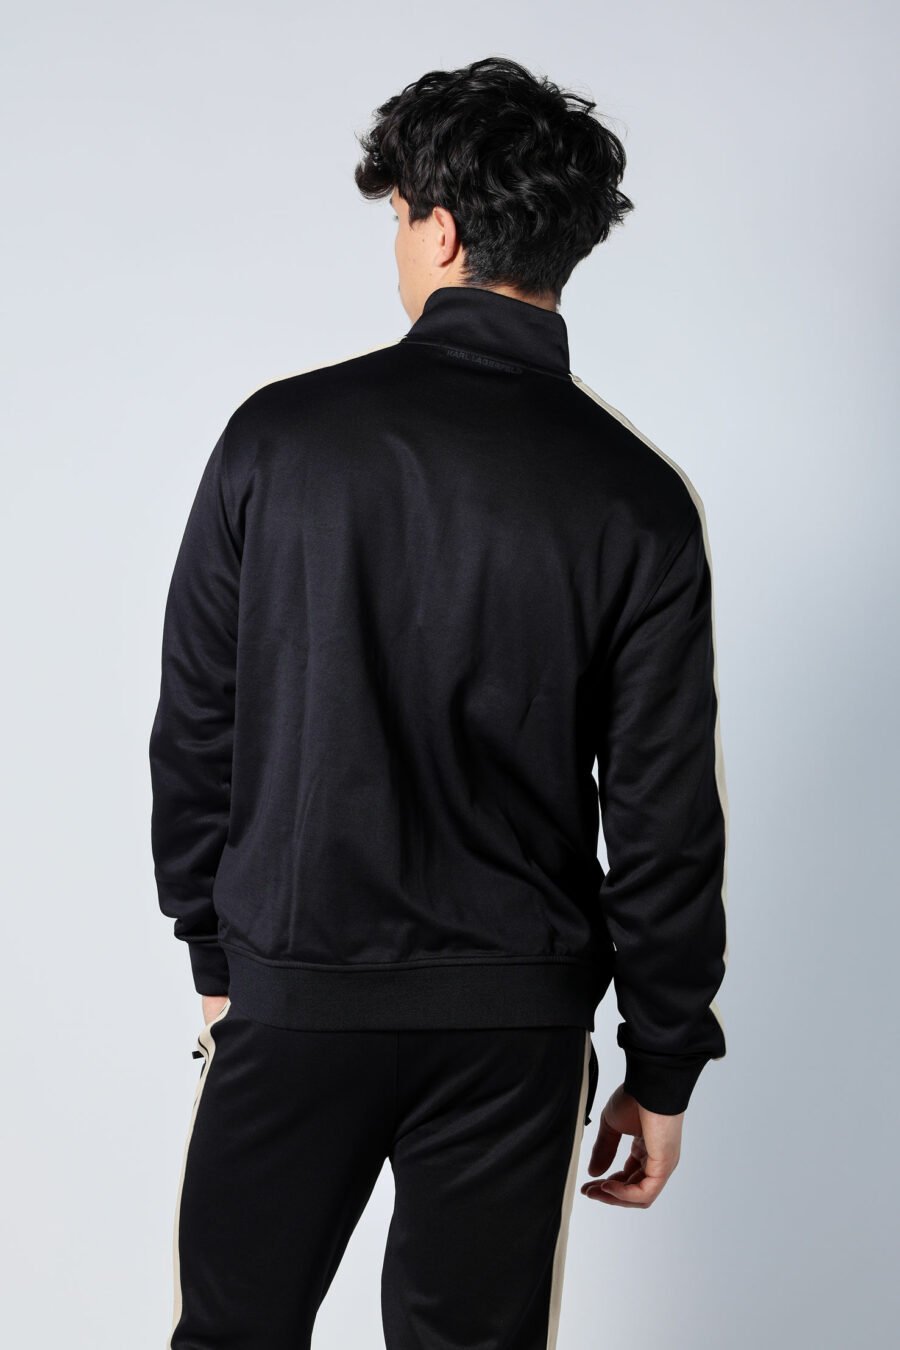 Schwarzes Sweatshirt mit Reißverschluss und Minilogue und beigefarbenen Seitenstreifen - Untitled Catalog 05698